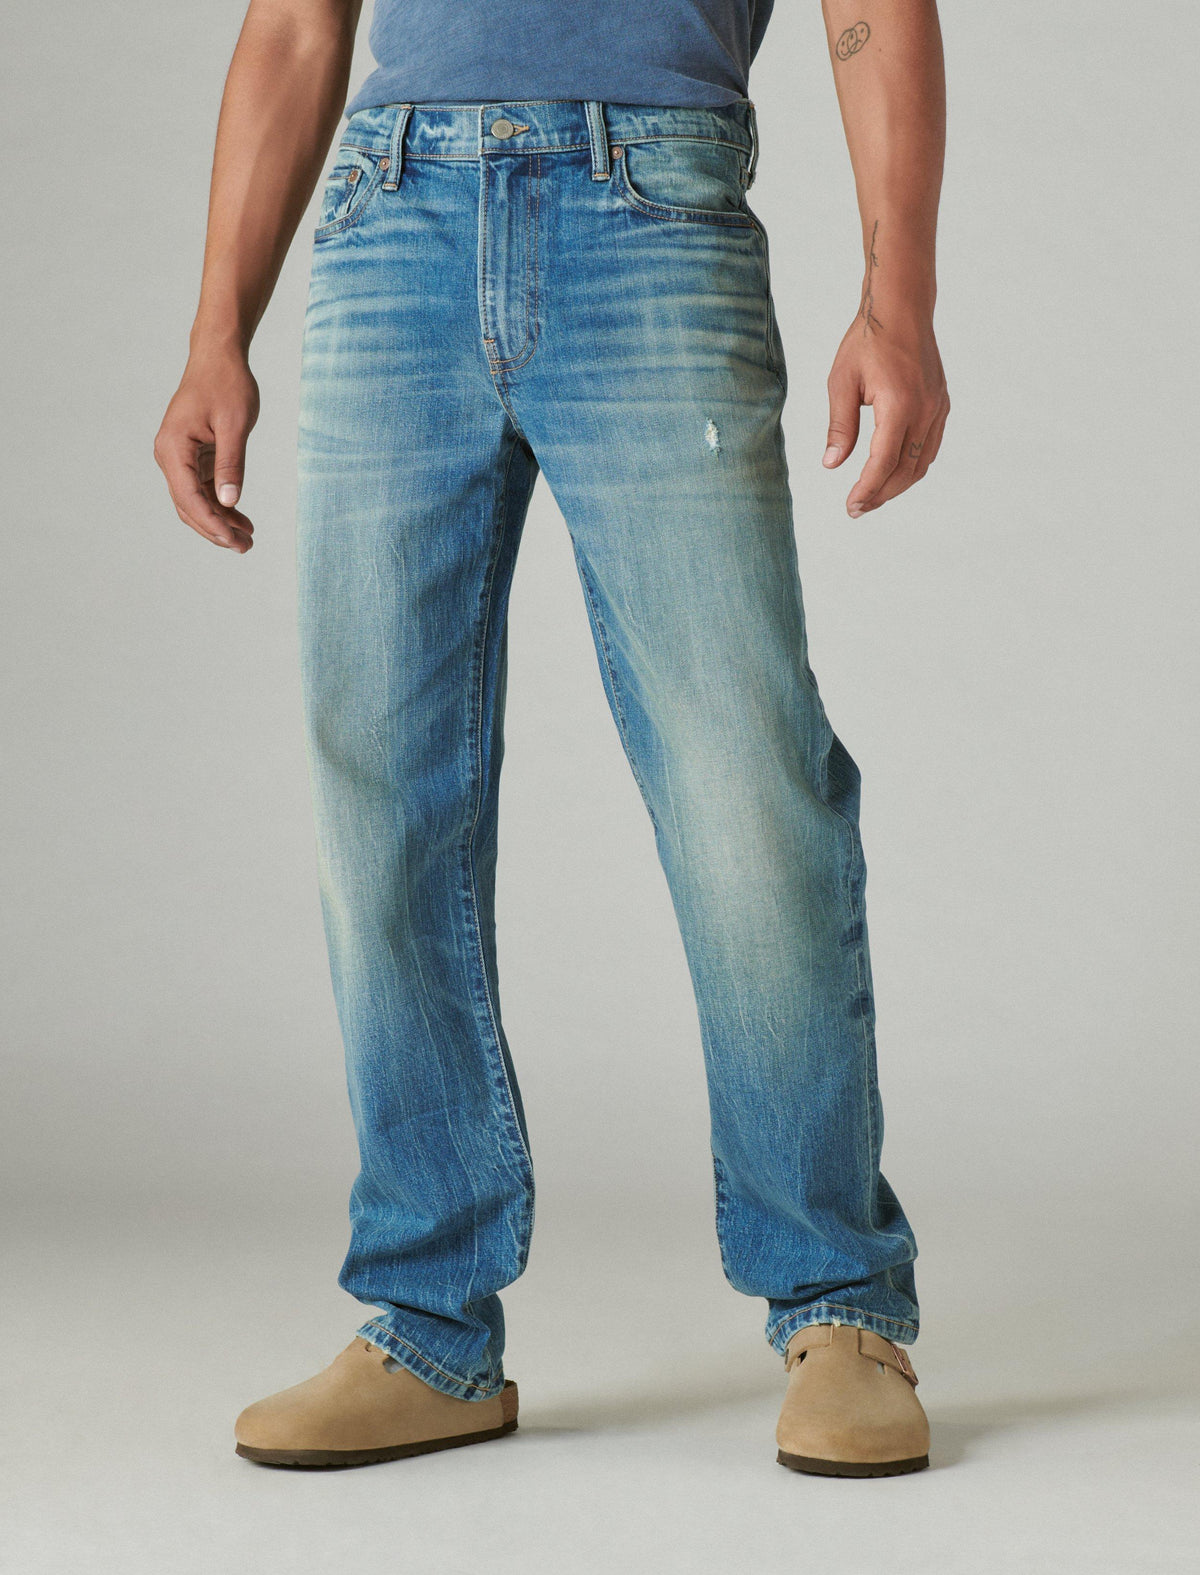 Lucky Brand 363 Vintage Straight Guinness Jean - Men's Pants Denim Straight Leg Jeans Stout